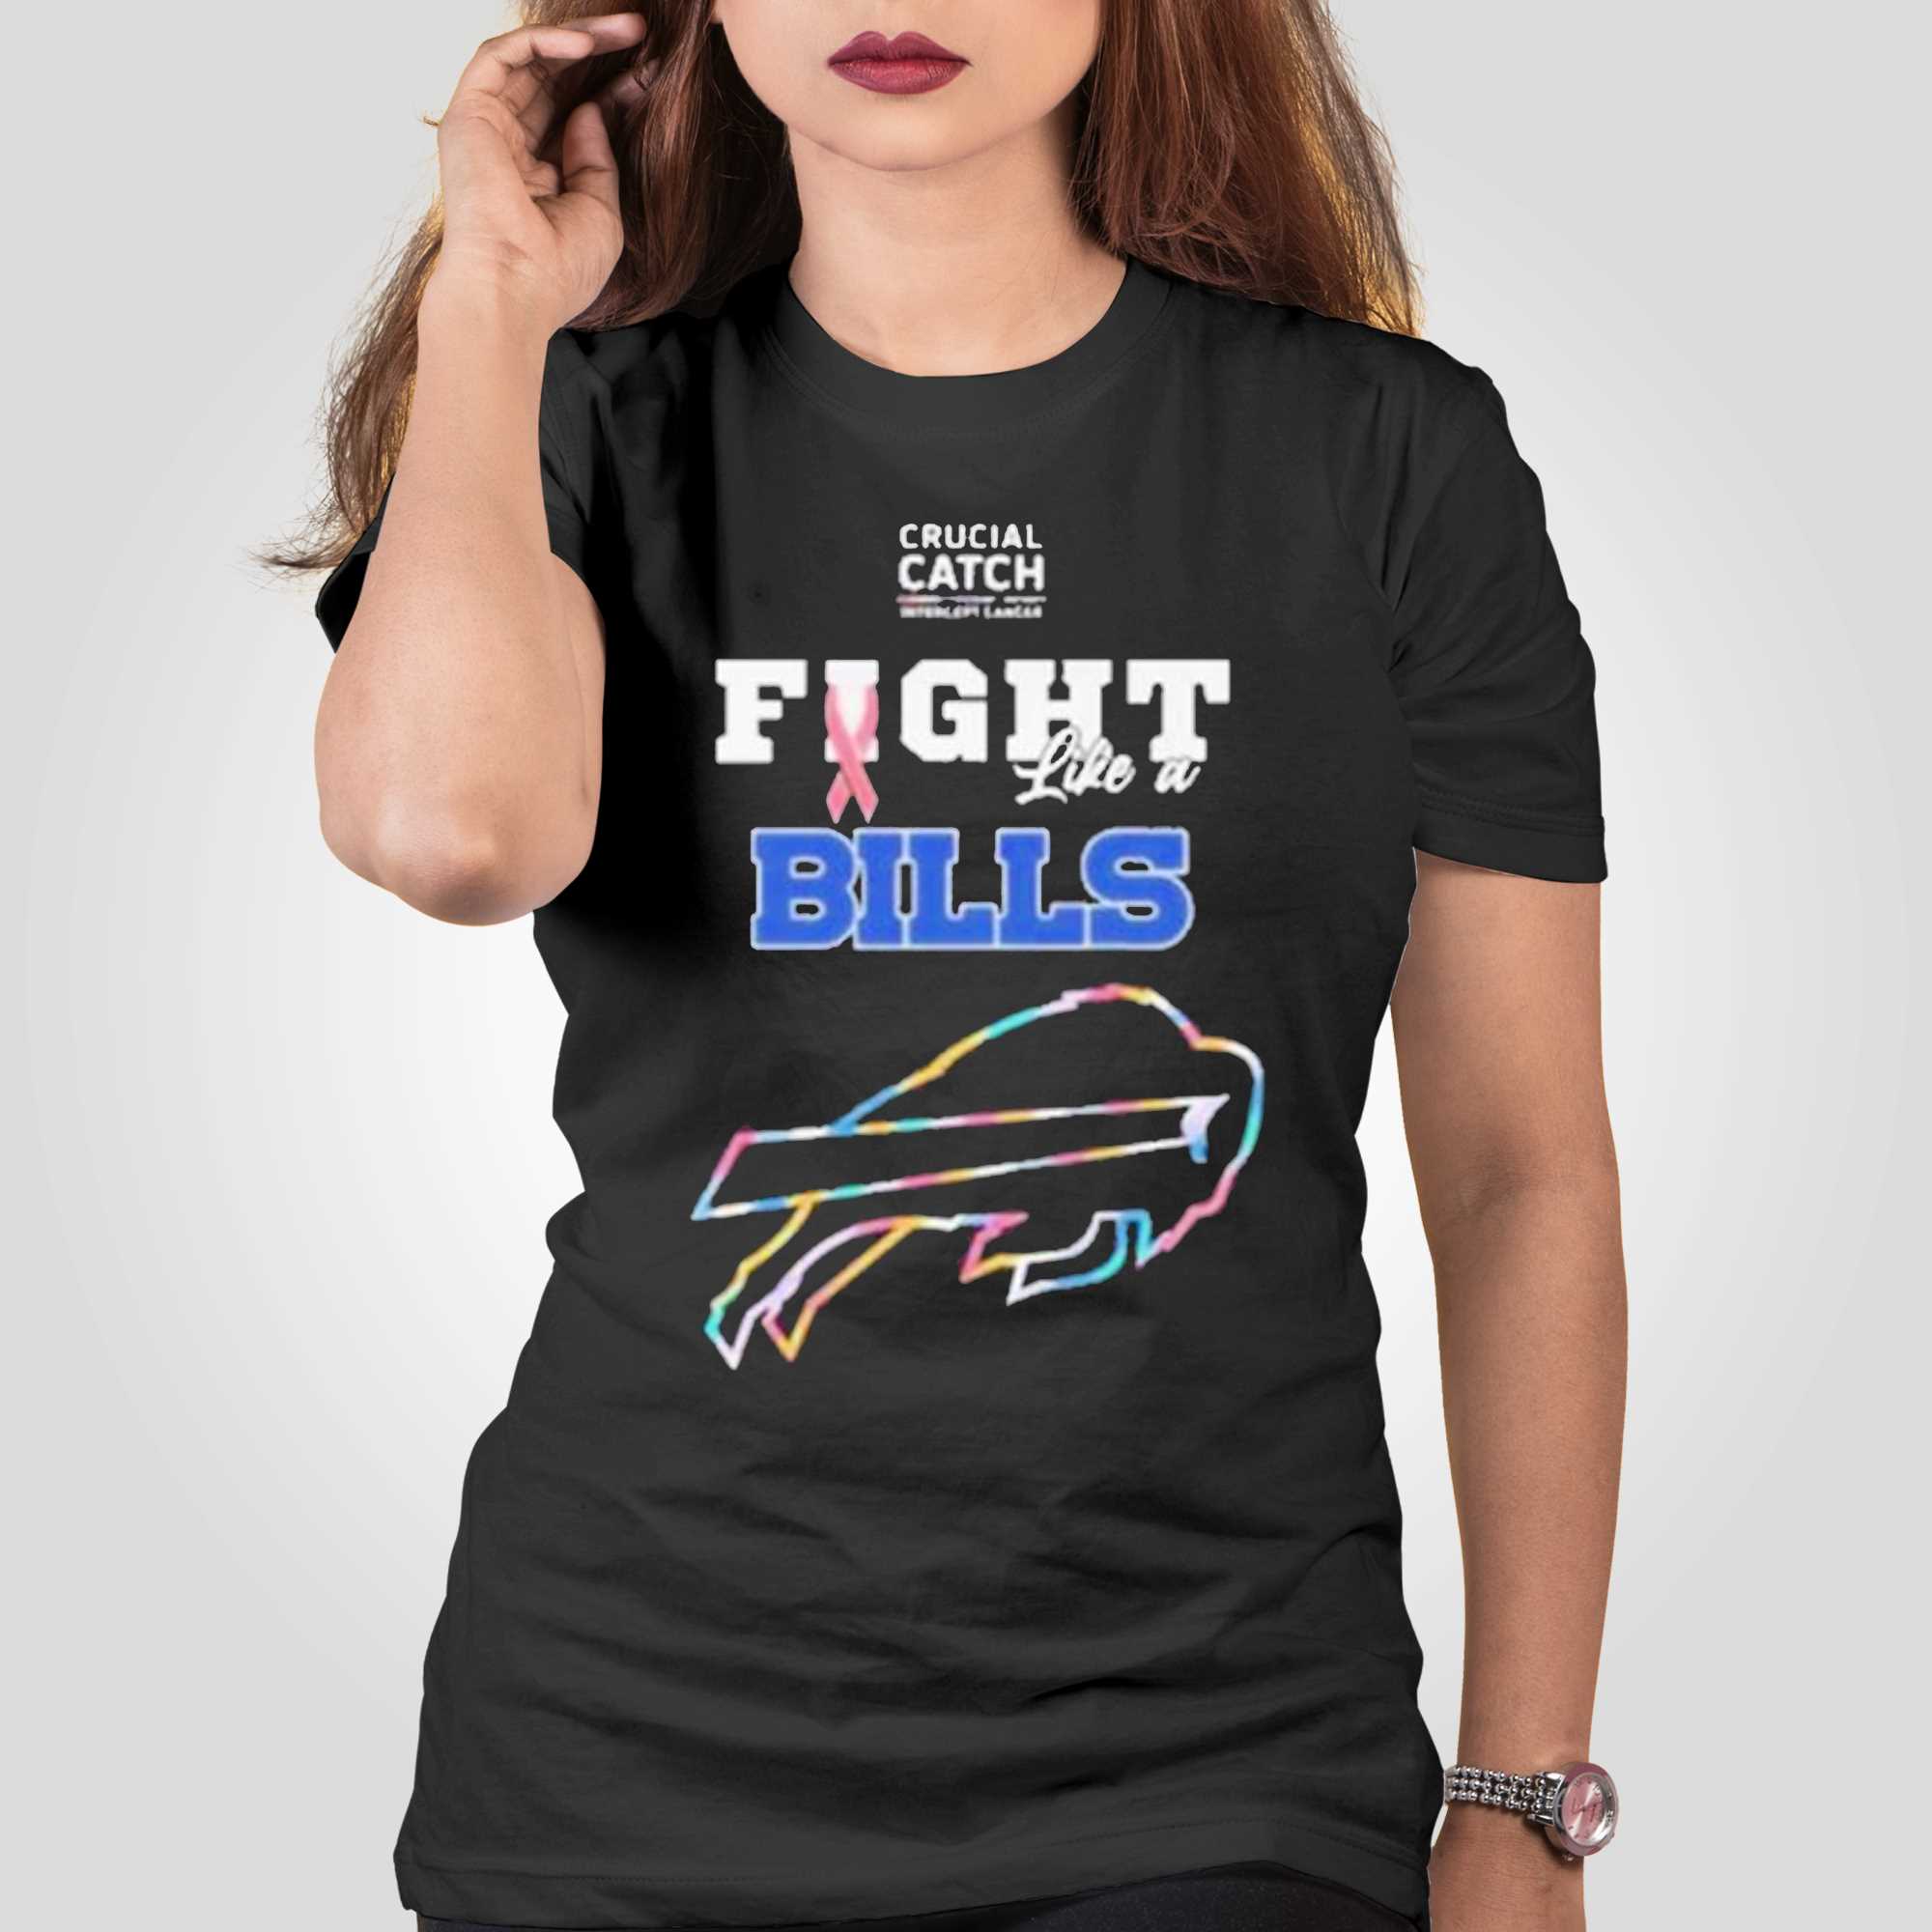 Buffalo Bills Crucial Catch Intercept Cancer Fight Like A Bills Shirt